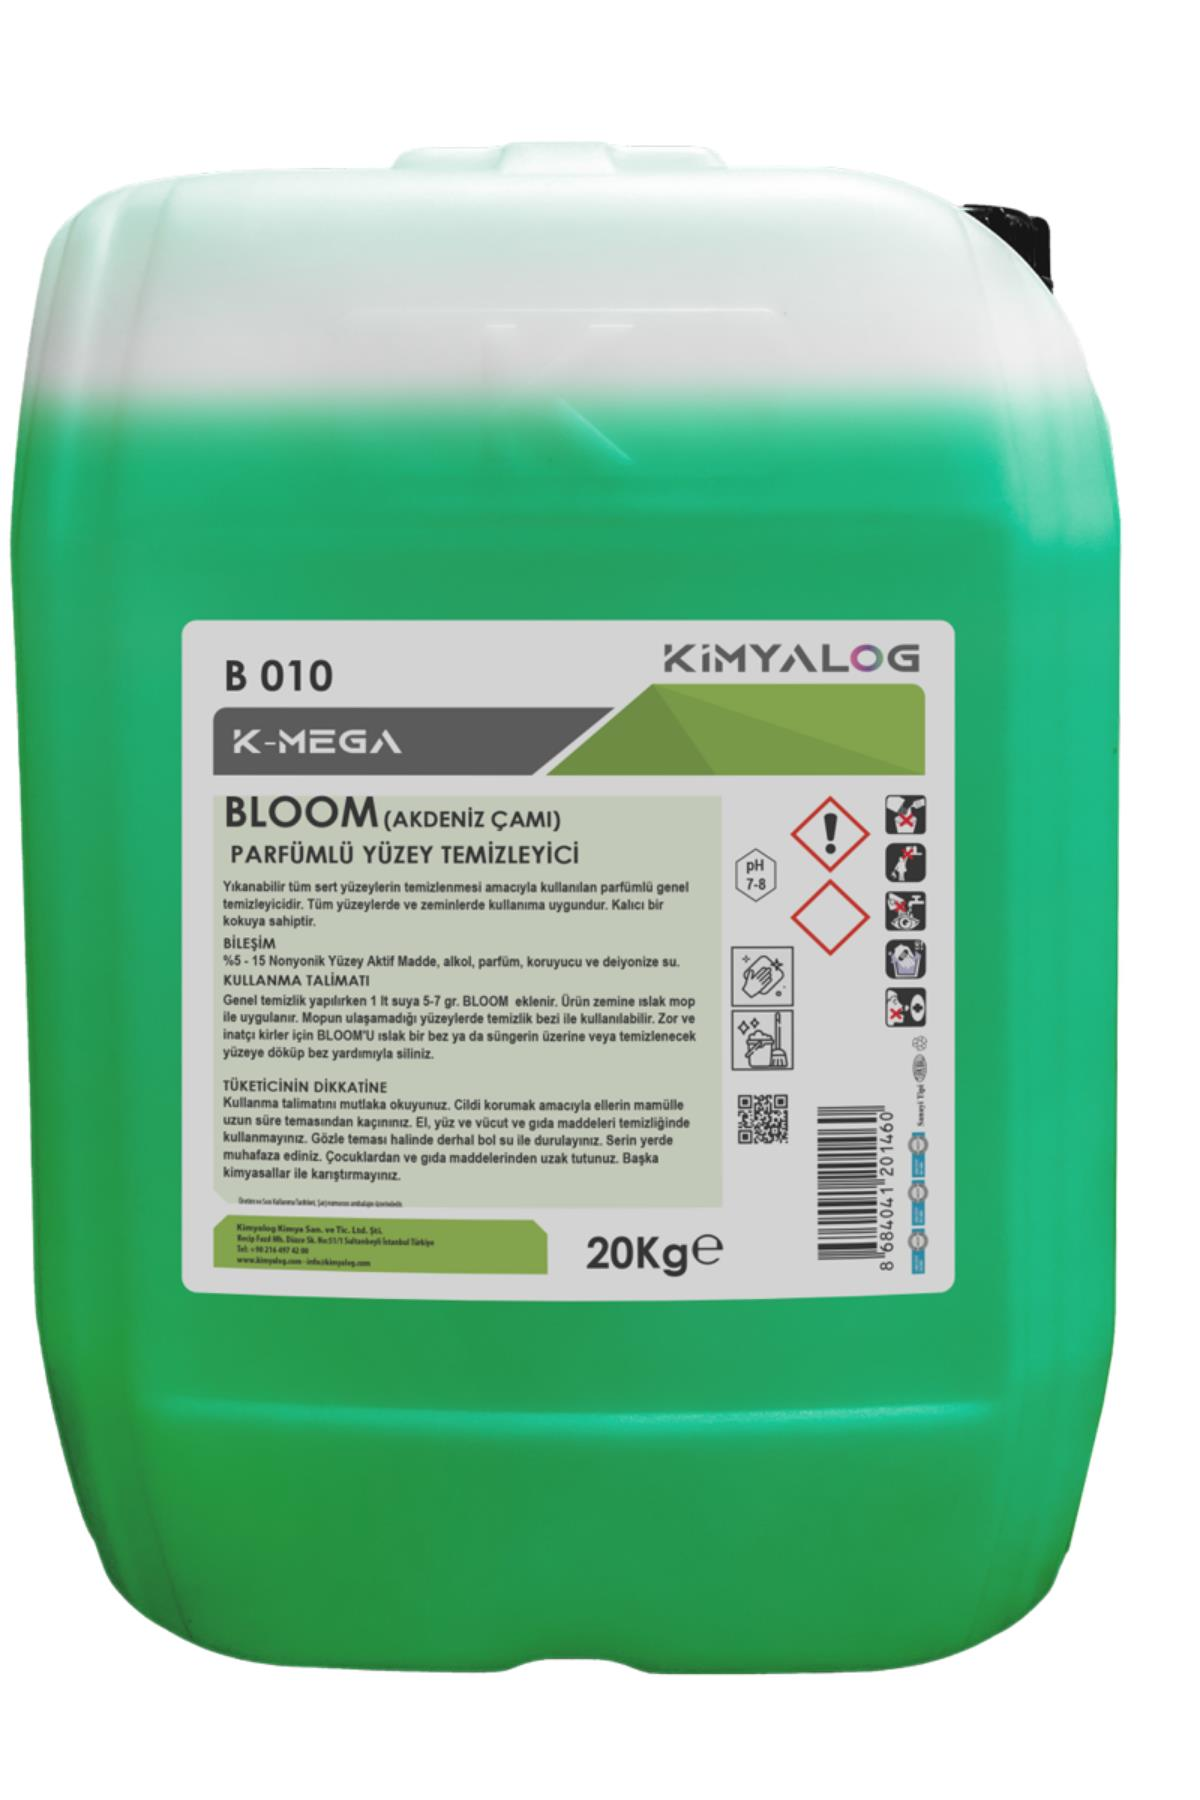 Kimyalog K-Mega Bloom Parfümlü Yüzey Temizleyici (Akdeniz Çamı) 20 Lt